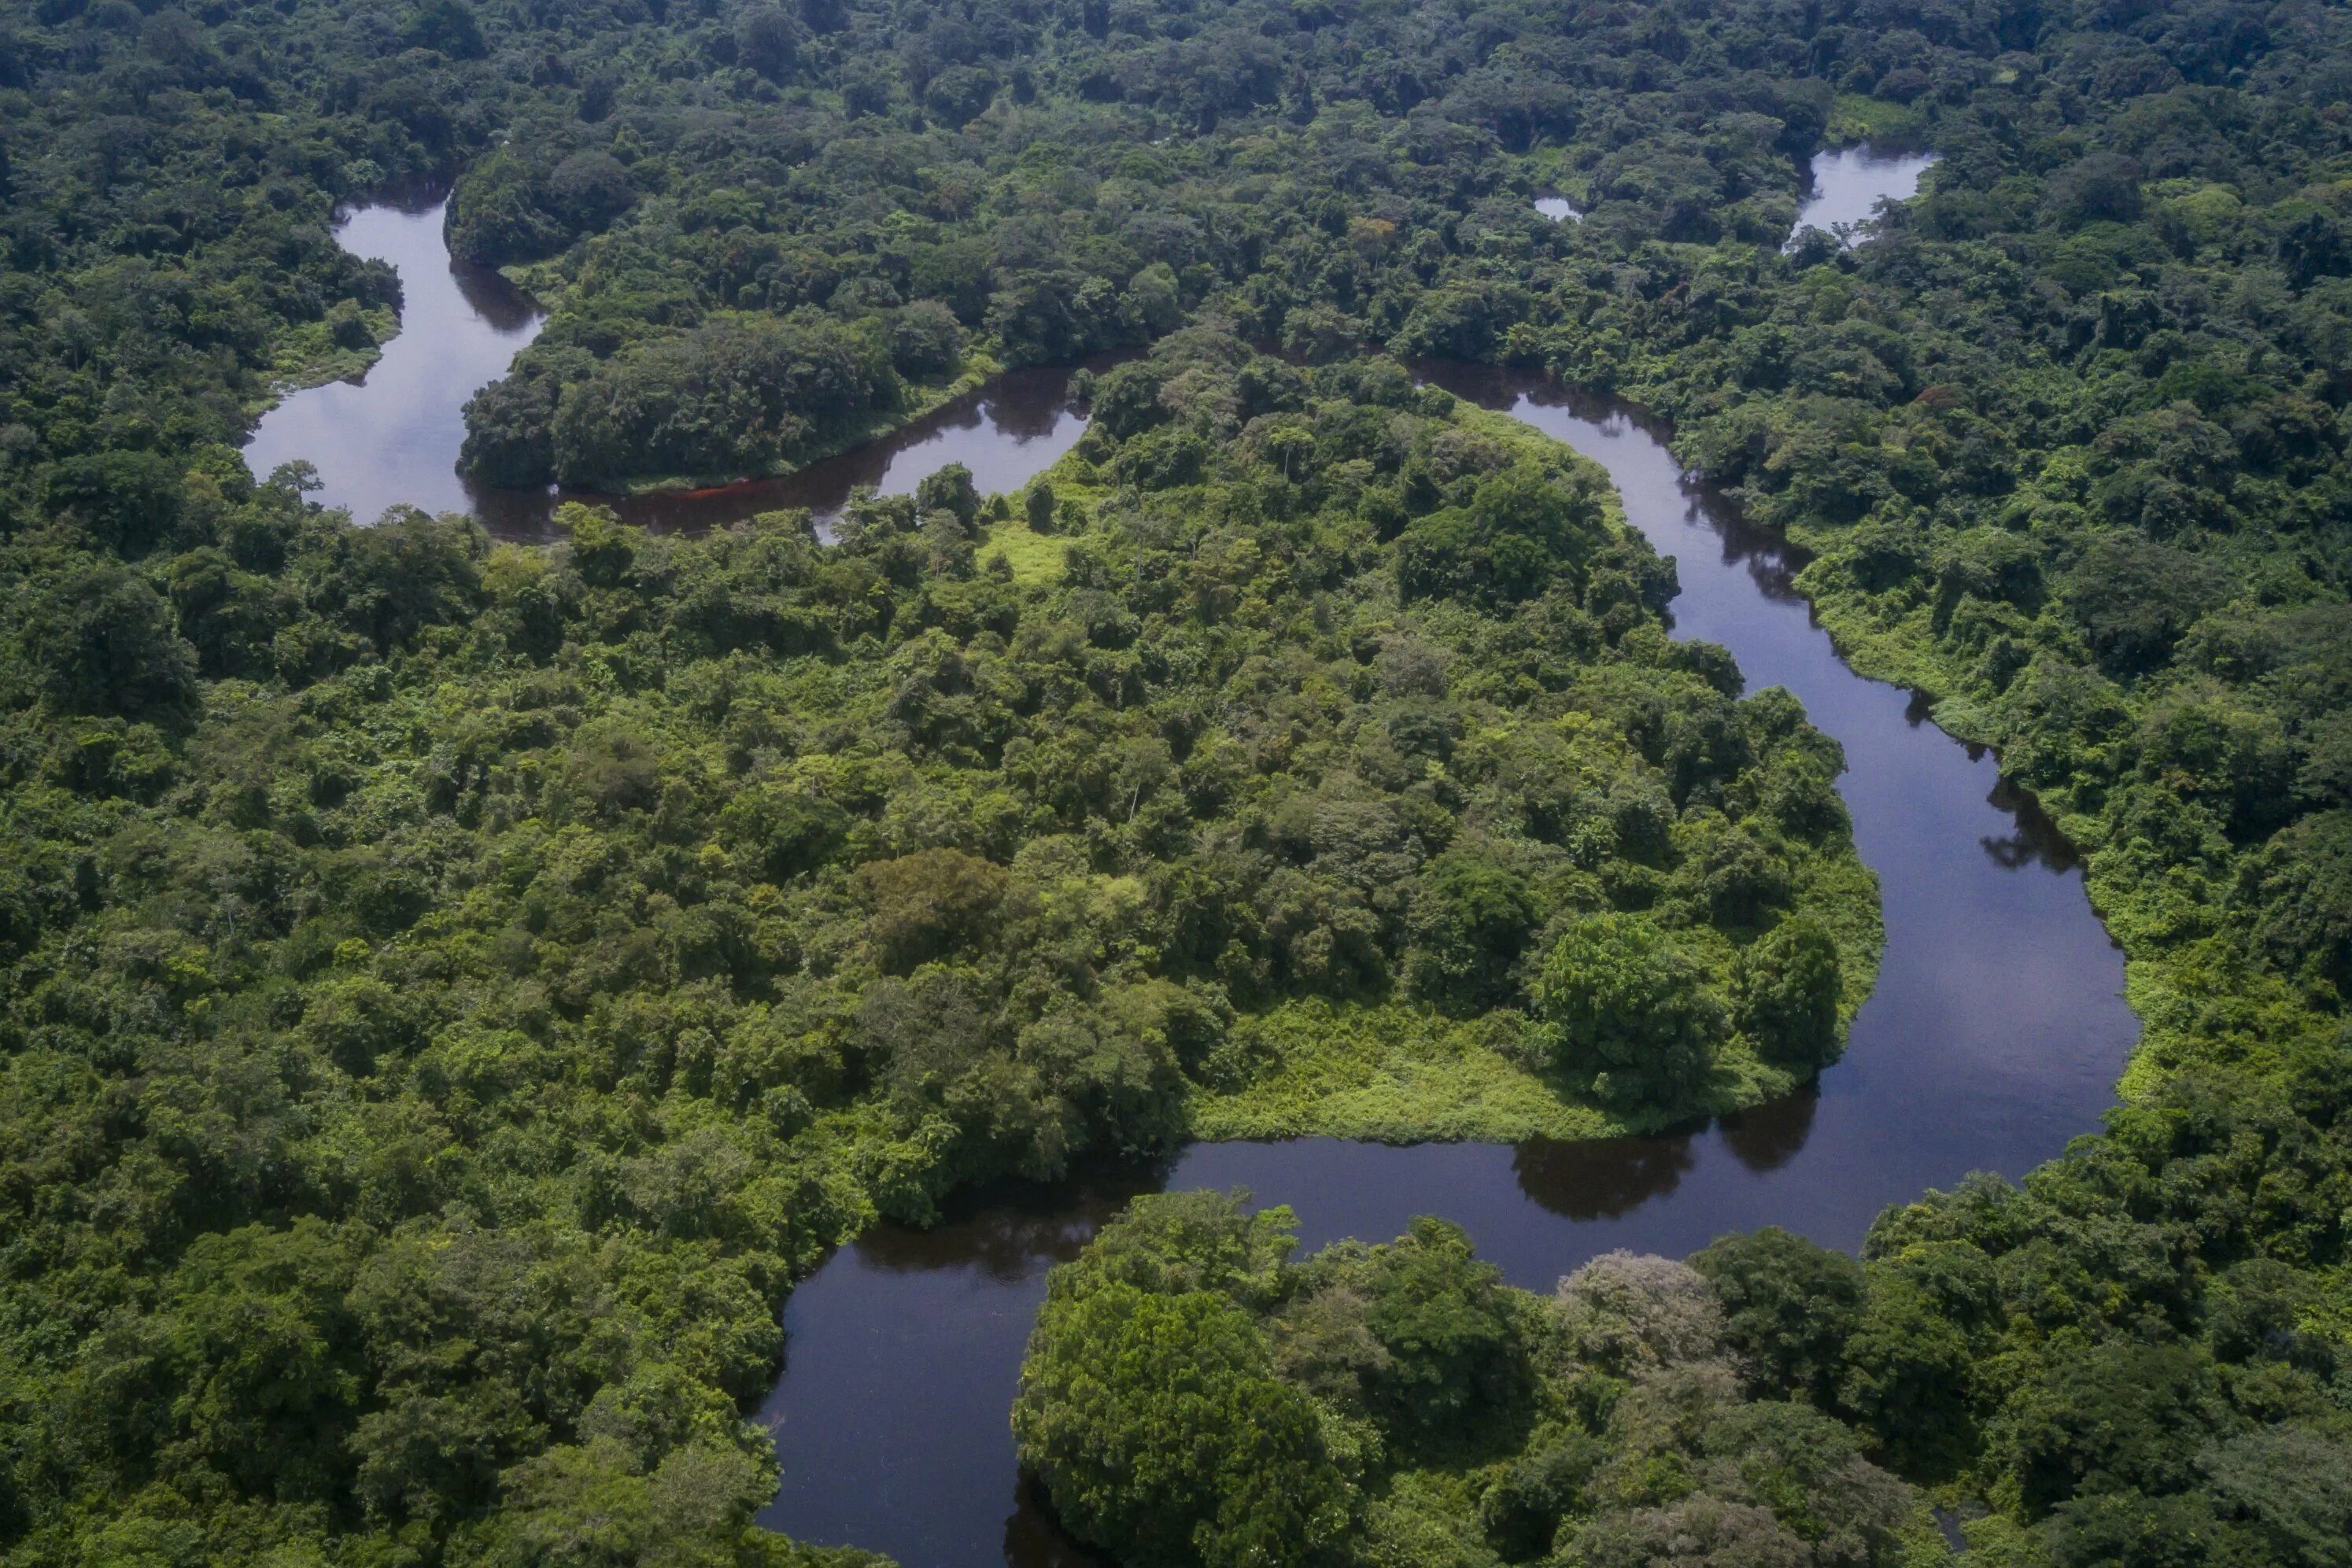 Amazon borneo congo. Национальный парк Салонга. Река Конго национальный парк Салонга. Национальный парк Салонга в Африке. Демократическая Республика Конго впадина Конго.